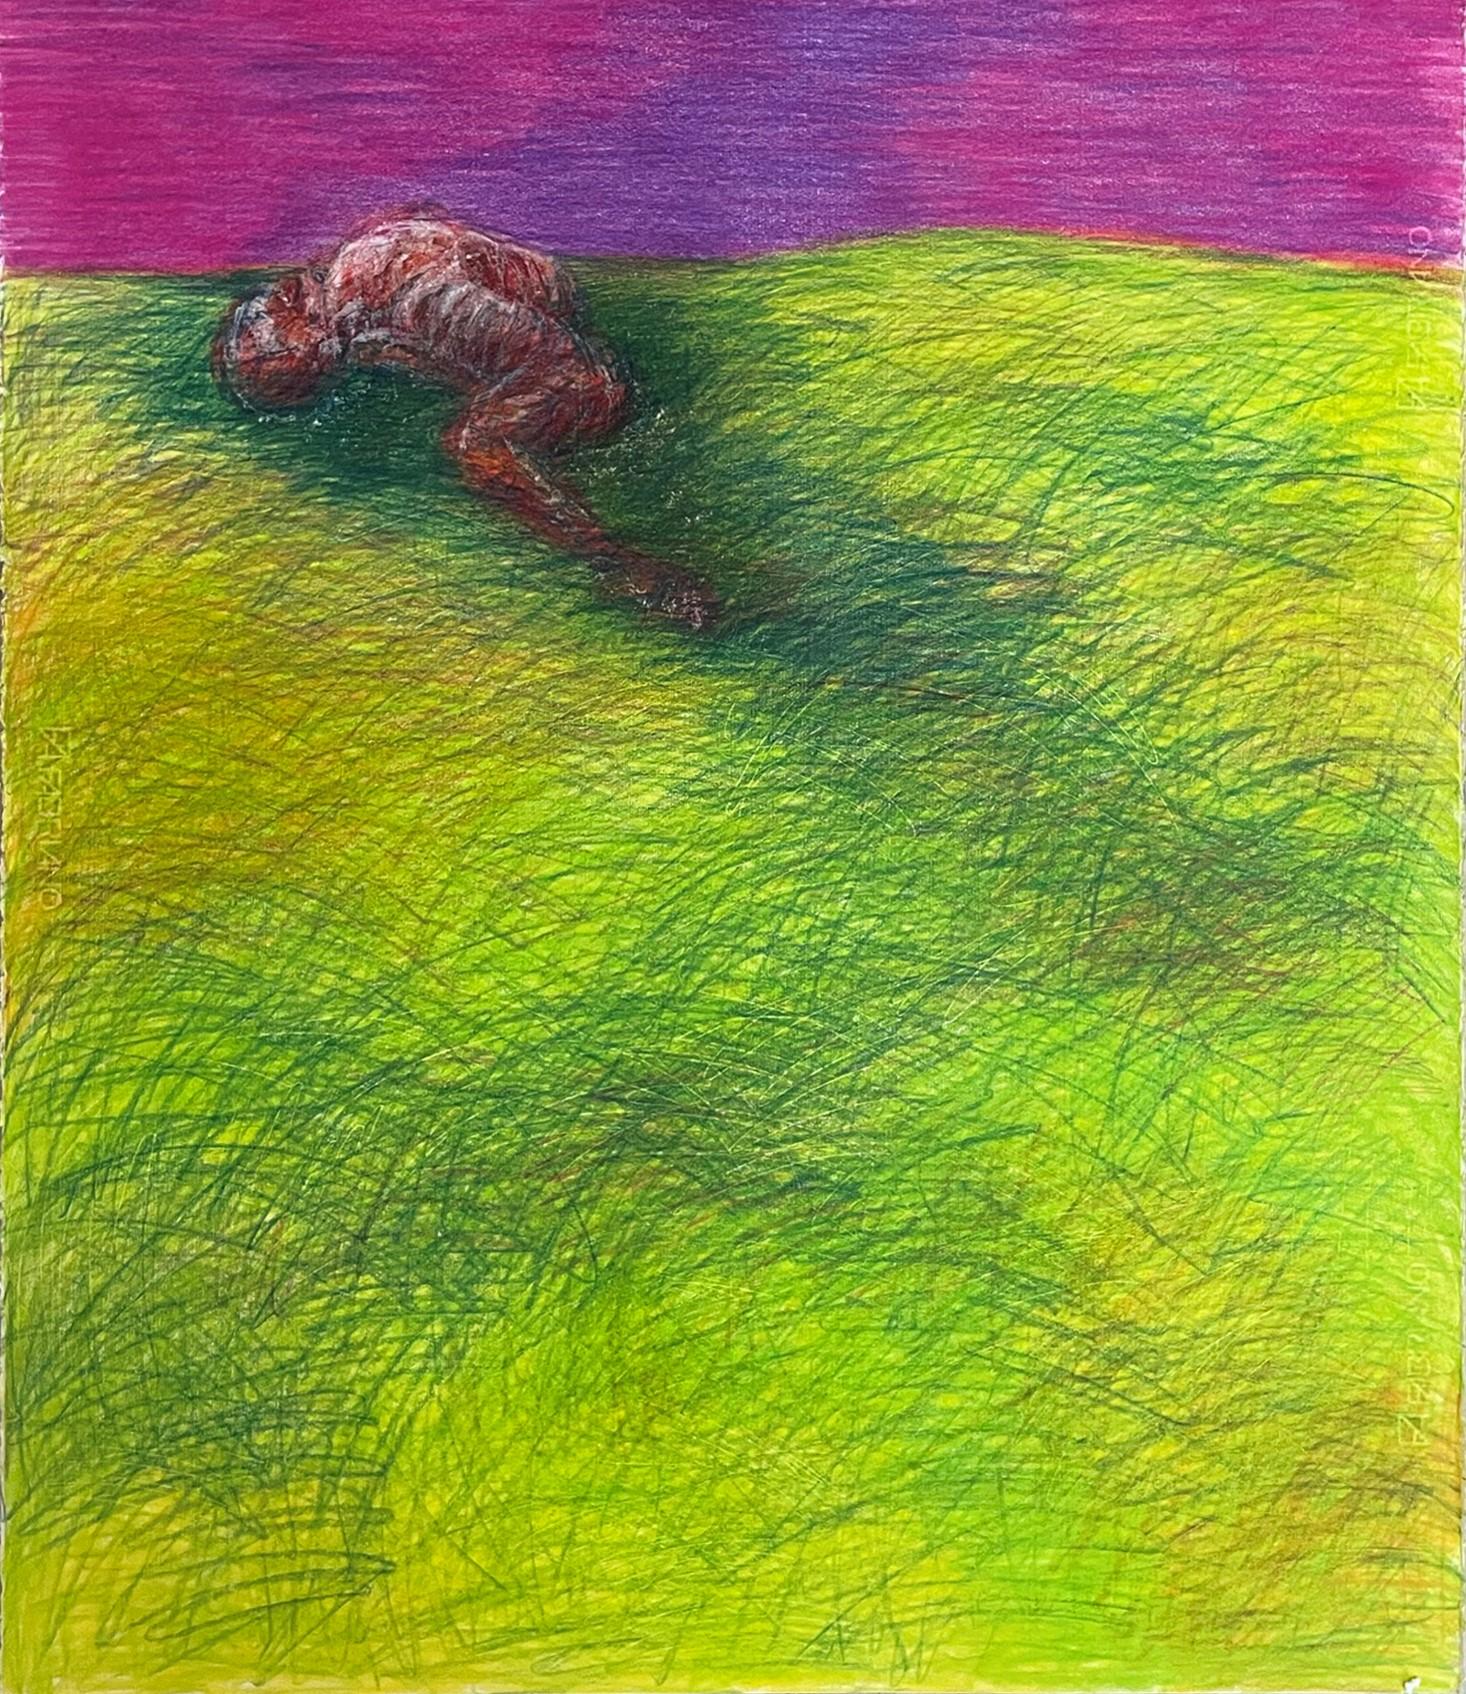 Untitled_Remains. Der tote Körper auf dem Feld (Grün), Figurative Art, von Zsolt Berszán